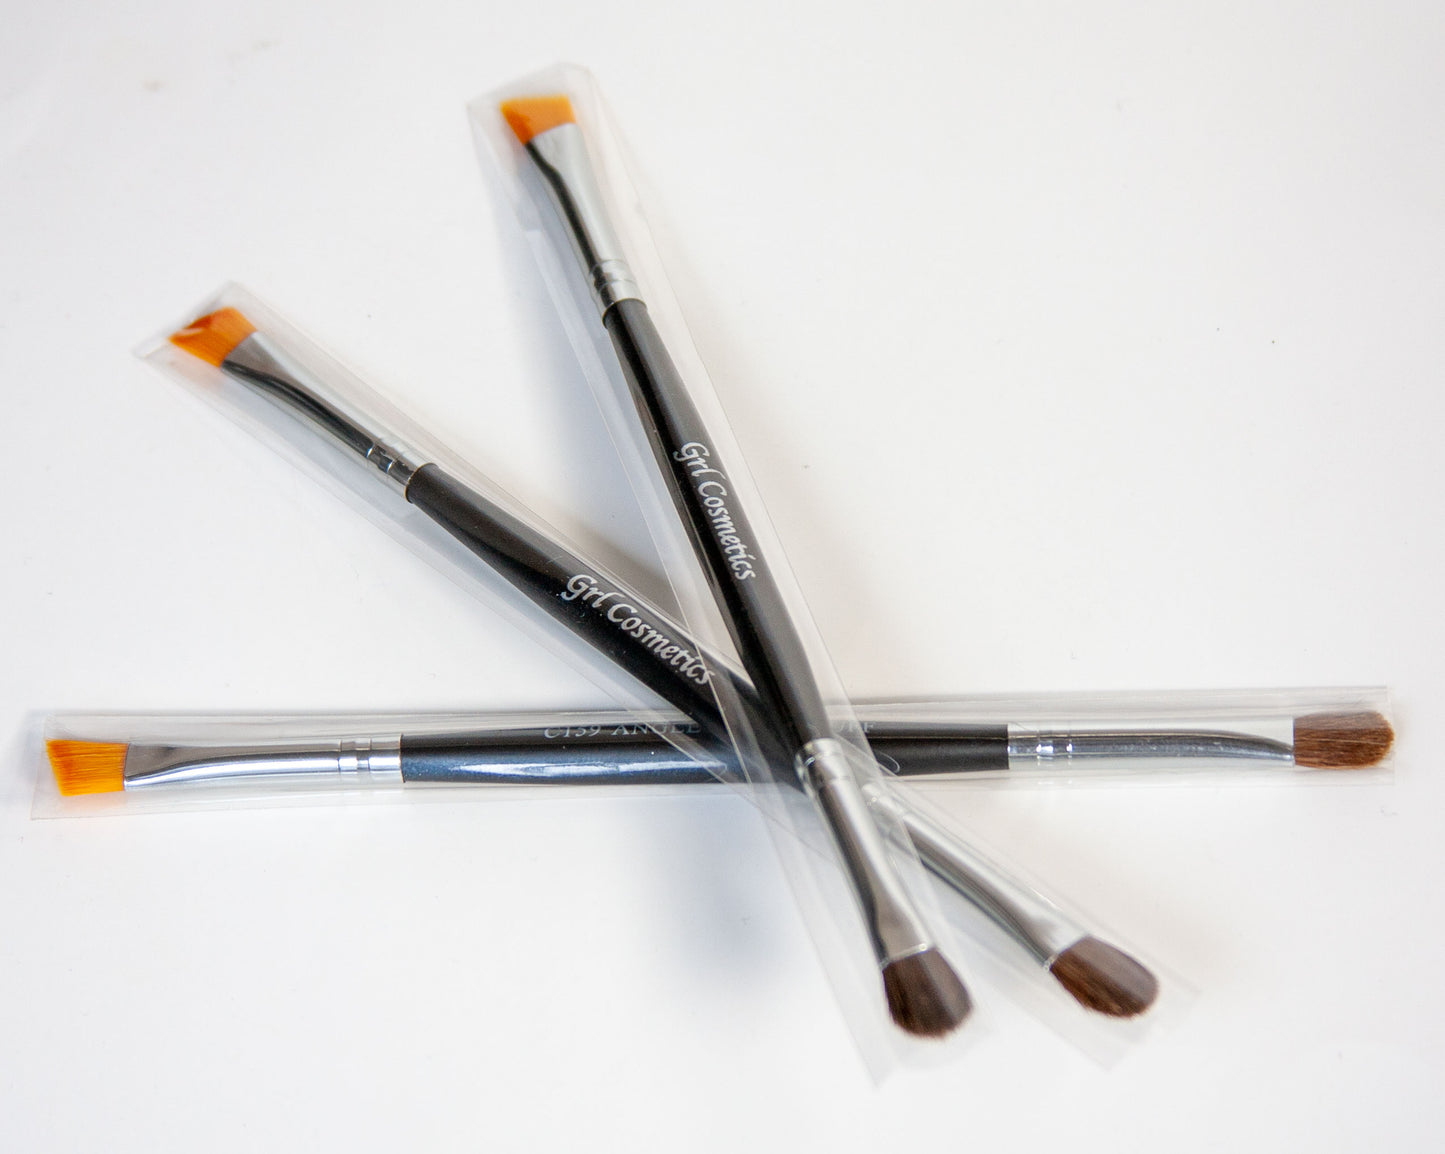 Rất nhiều loại makeup brush khác nhau được sử dụng trong makeup. Hãy xem tutorial của chúng tôi để tận hưởng trải nghiệm tuyệt vời của việc sử dụng những loại brush phù hợp nhất!